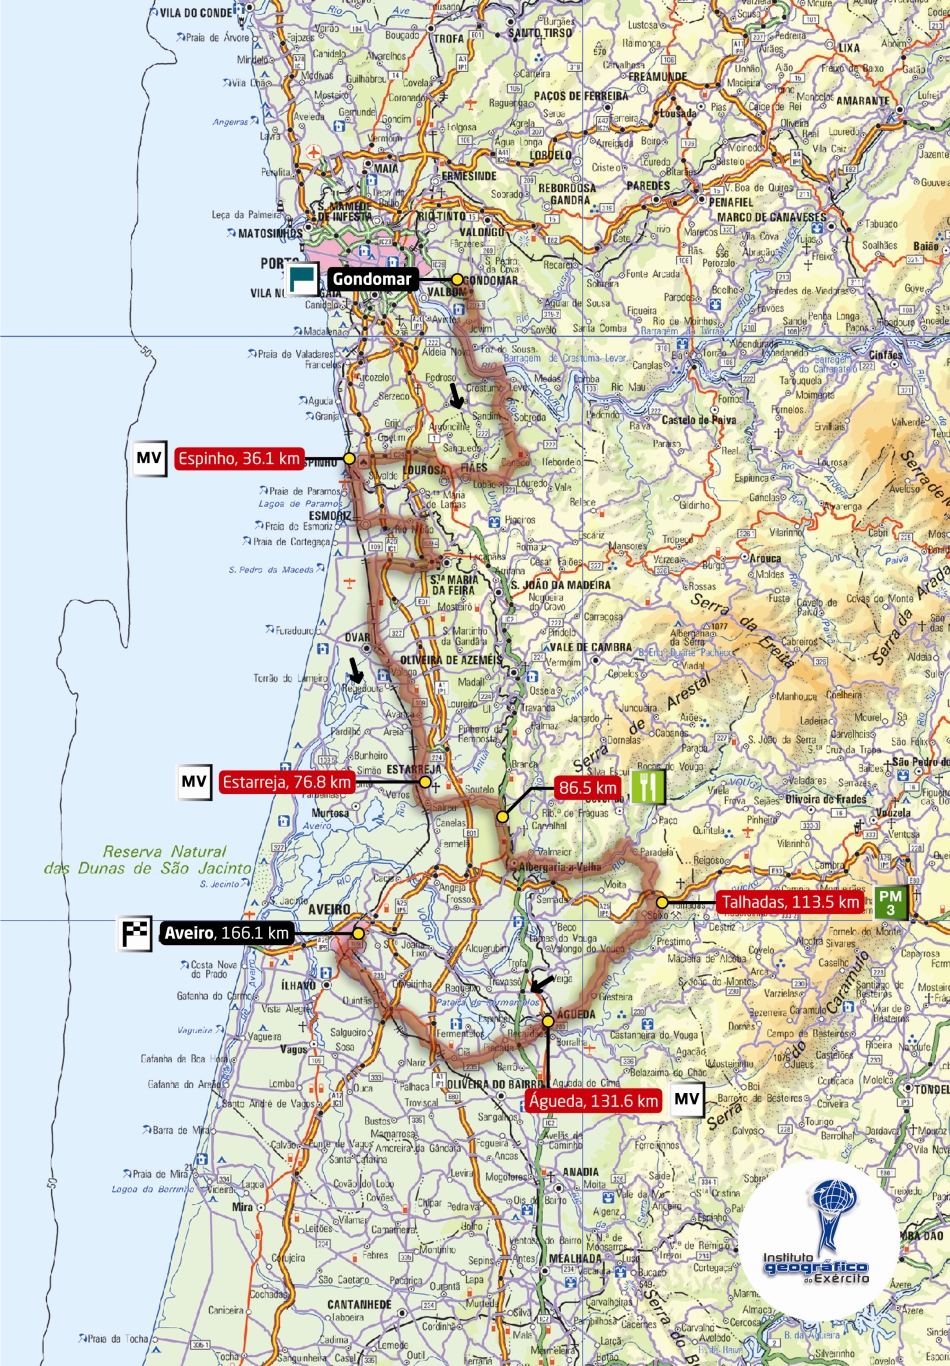 Streckenverlauf Volta a Portugal em Bicicleta 2009 - Etappe 8